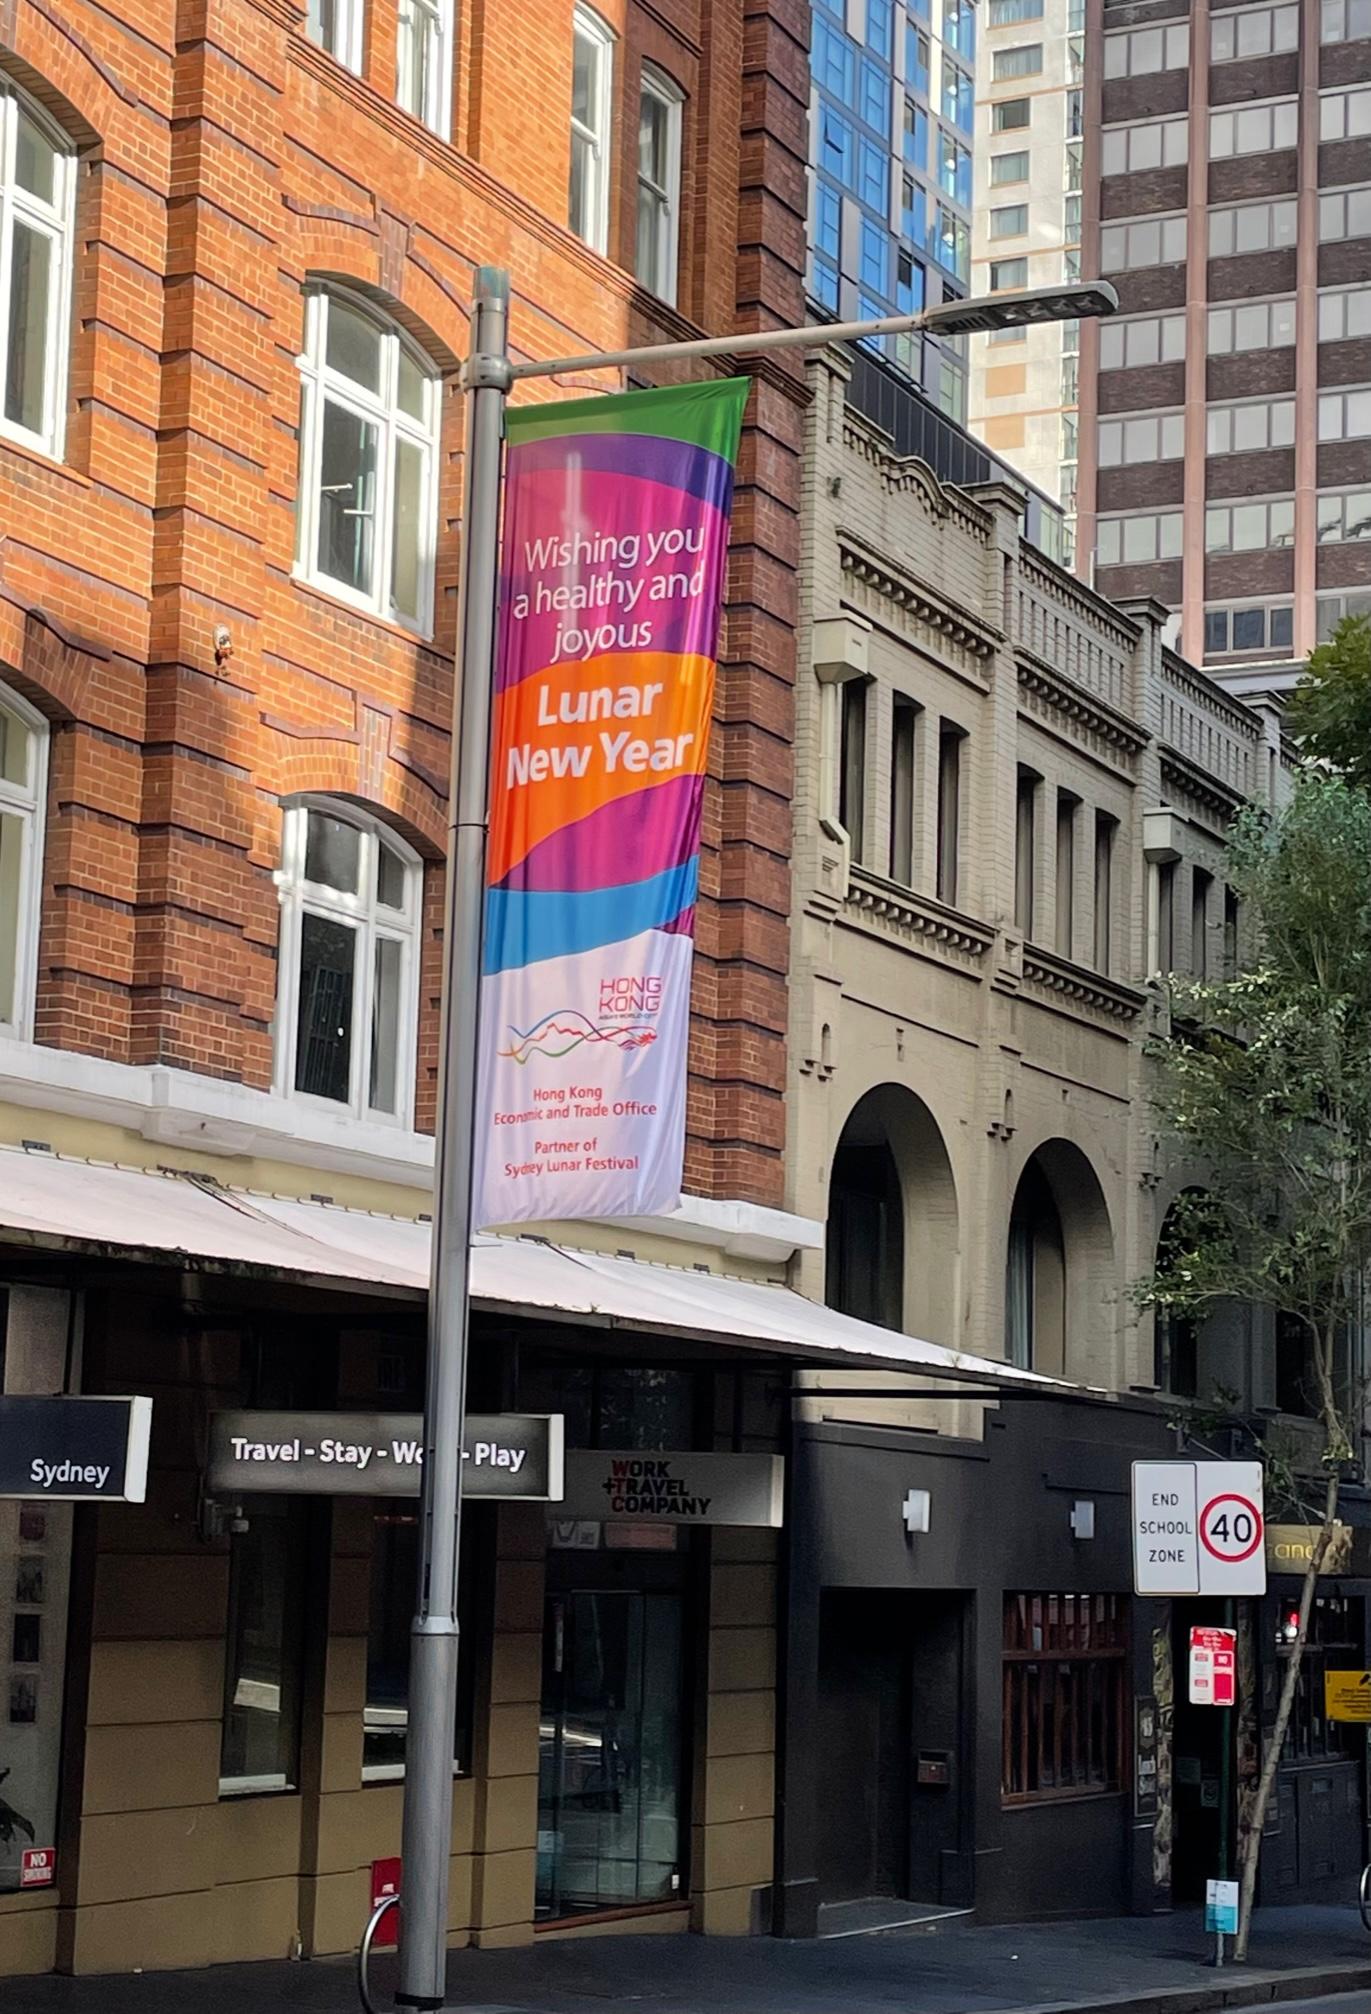 由悉尼市政府举办的悉尼农历节在一月二十九日至二月十三日举行。节庆期间，香港驻悉尼经济贸易办事处在悉尼市中心主要地点展示以香港为主题并印有新年贺语的大型旗帜，与当地市民同庆新春。